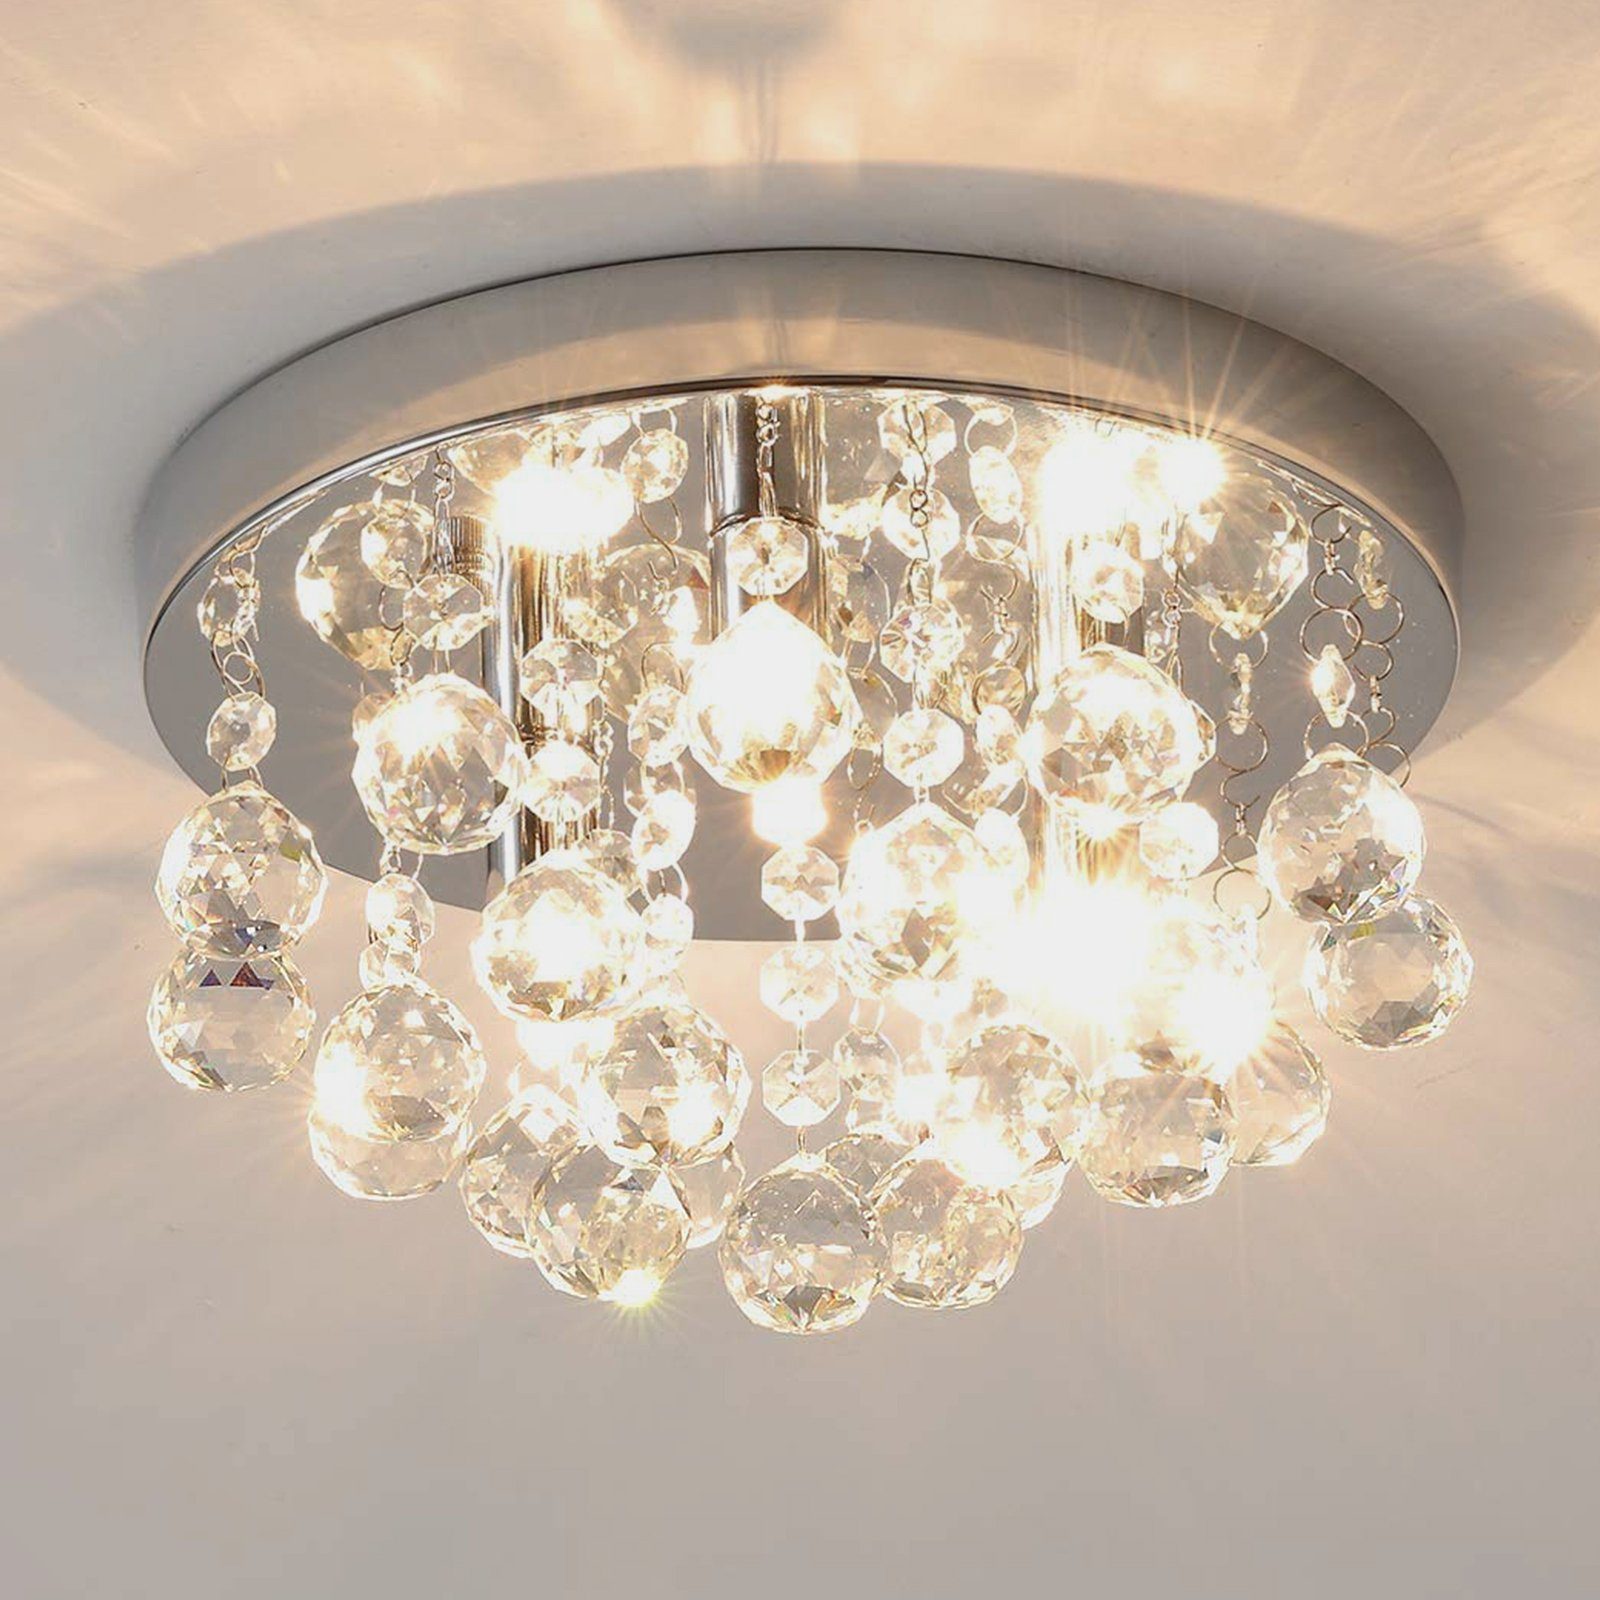 LED Luxus Hänge Lüster Lampe Kristall Kron Leuchte Ess Zimmer Decken Leuchte 